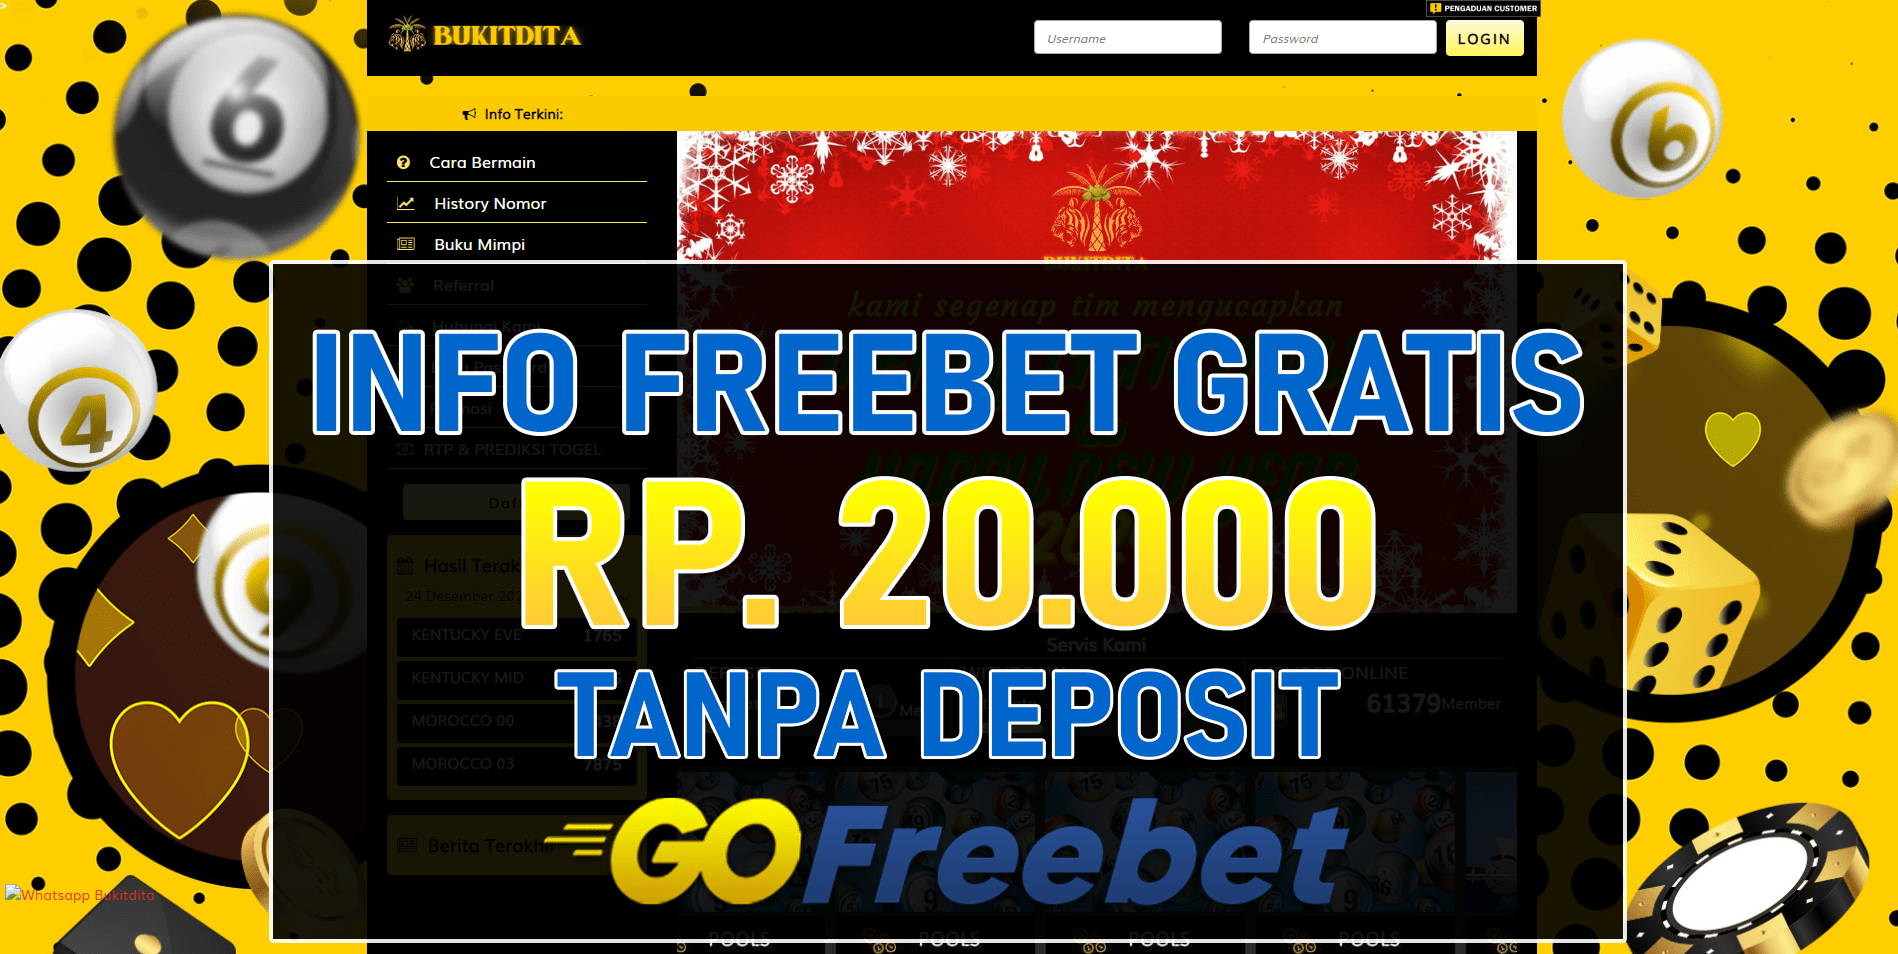 Bukitdita Freebet Gratis Rp 20.000 Tanpa Deposit